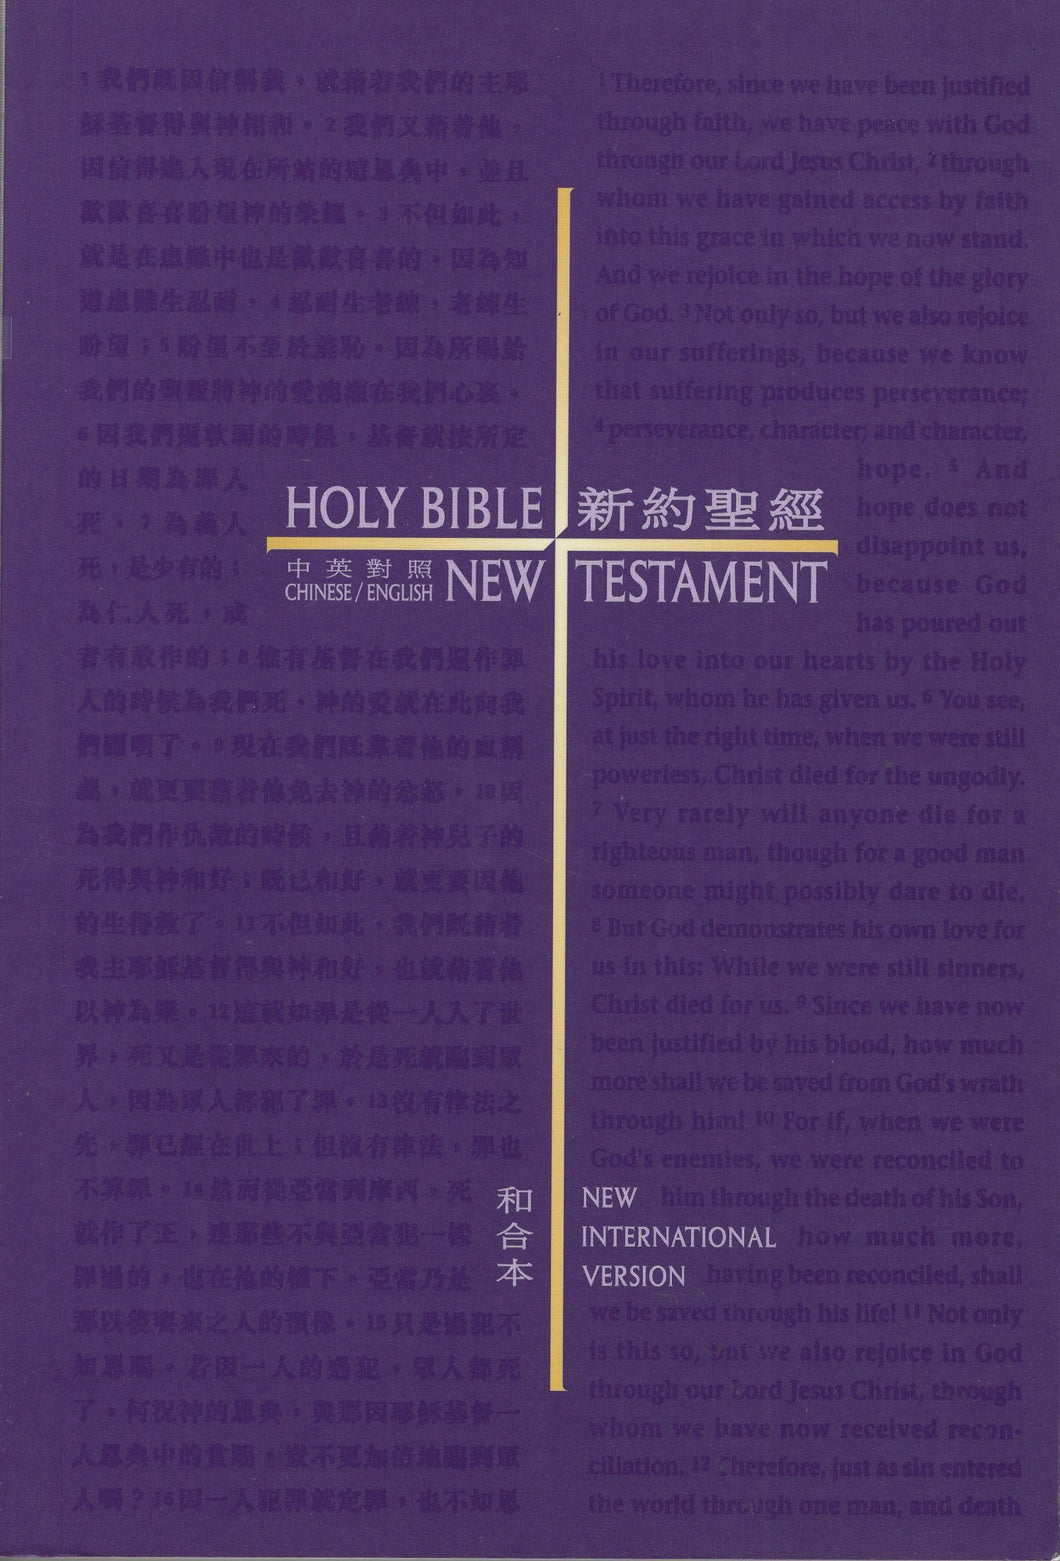 中英新约圣经(繁/平/和合本/NIV) #01B-025B